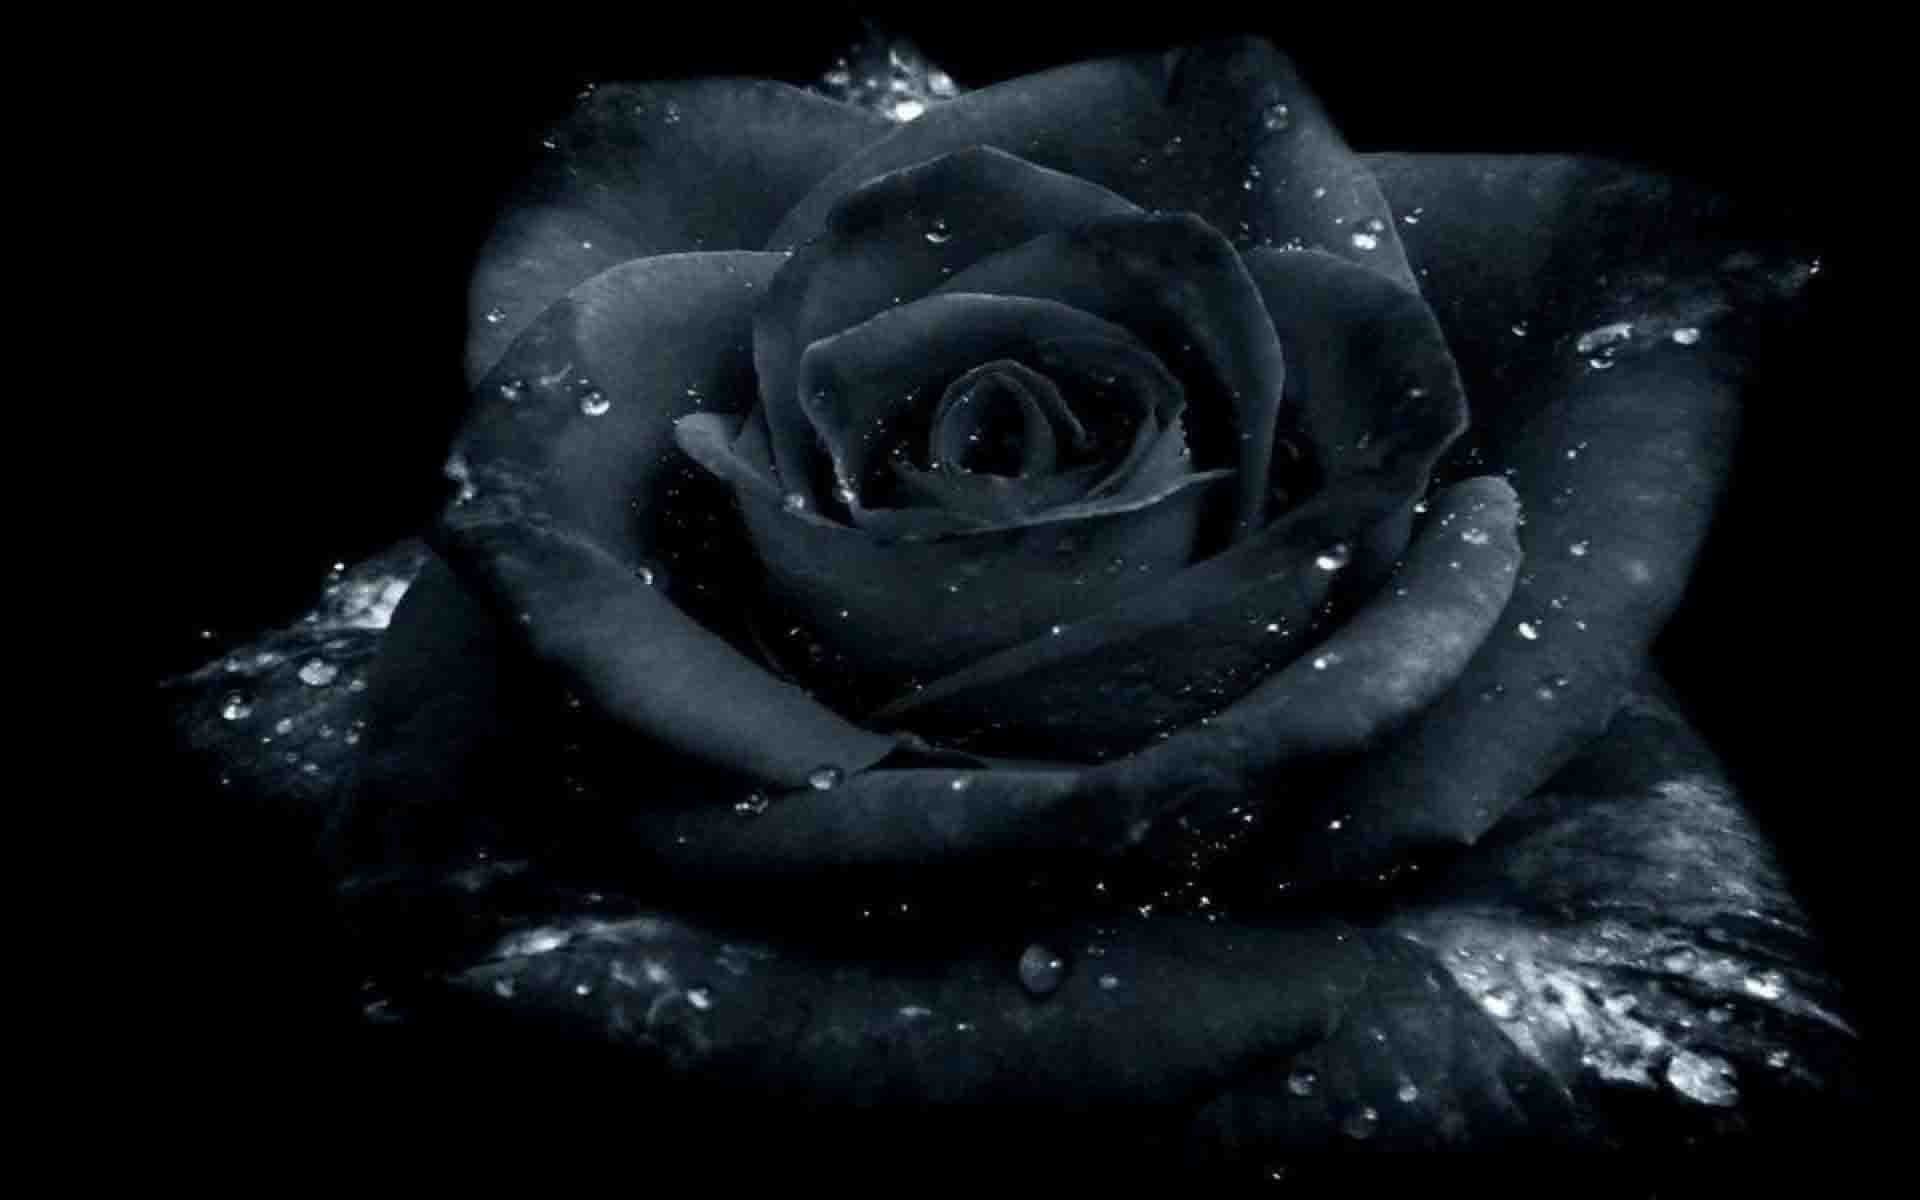 Hình nền hoa hồng đen miễn phí sẽ đem đến cho bạn sự sắc sảo và rất riêng biệt. Với những chiếc hoa hồng đen đầy bí ẩn và quyến rũ, bạn sẽ nhận thấy mình đang trở nên trang nhã và đẳng cấp hơn. Tải ngay hình nền này để trang trí cho màn hình máy tính của bạn.